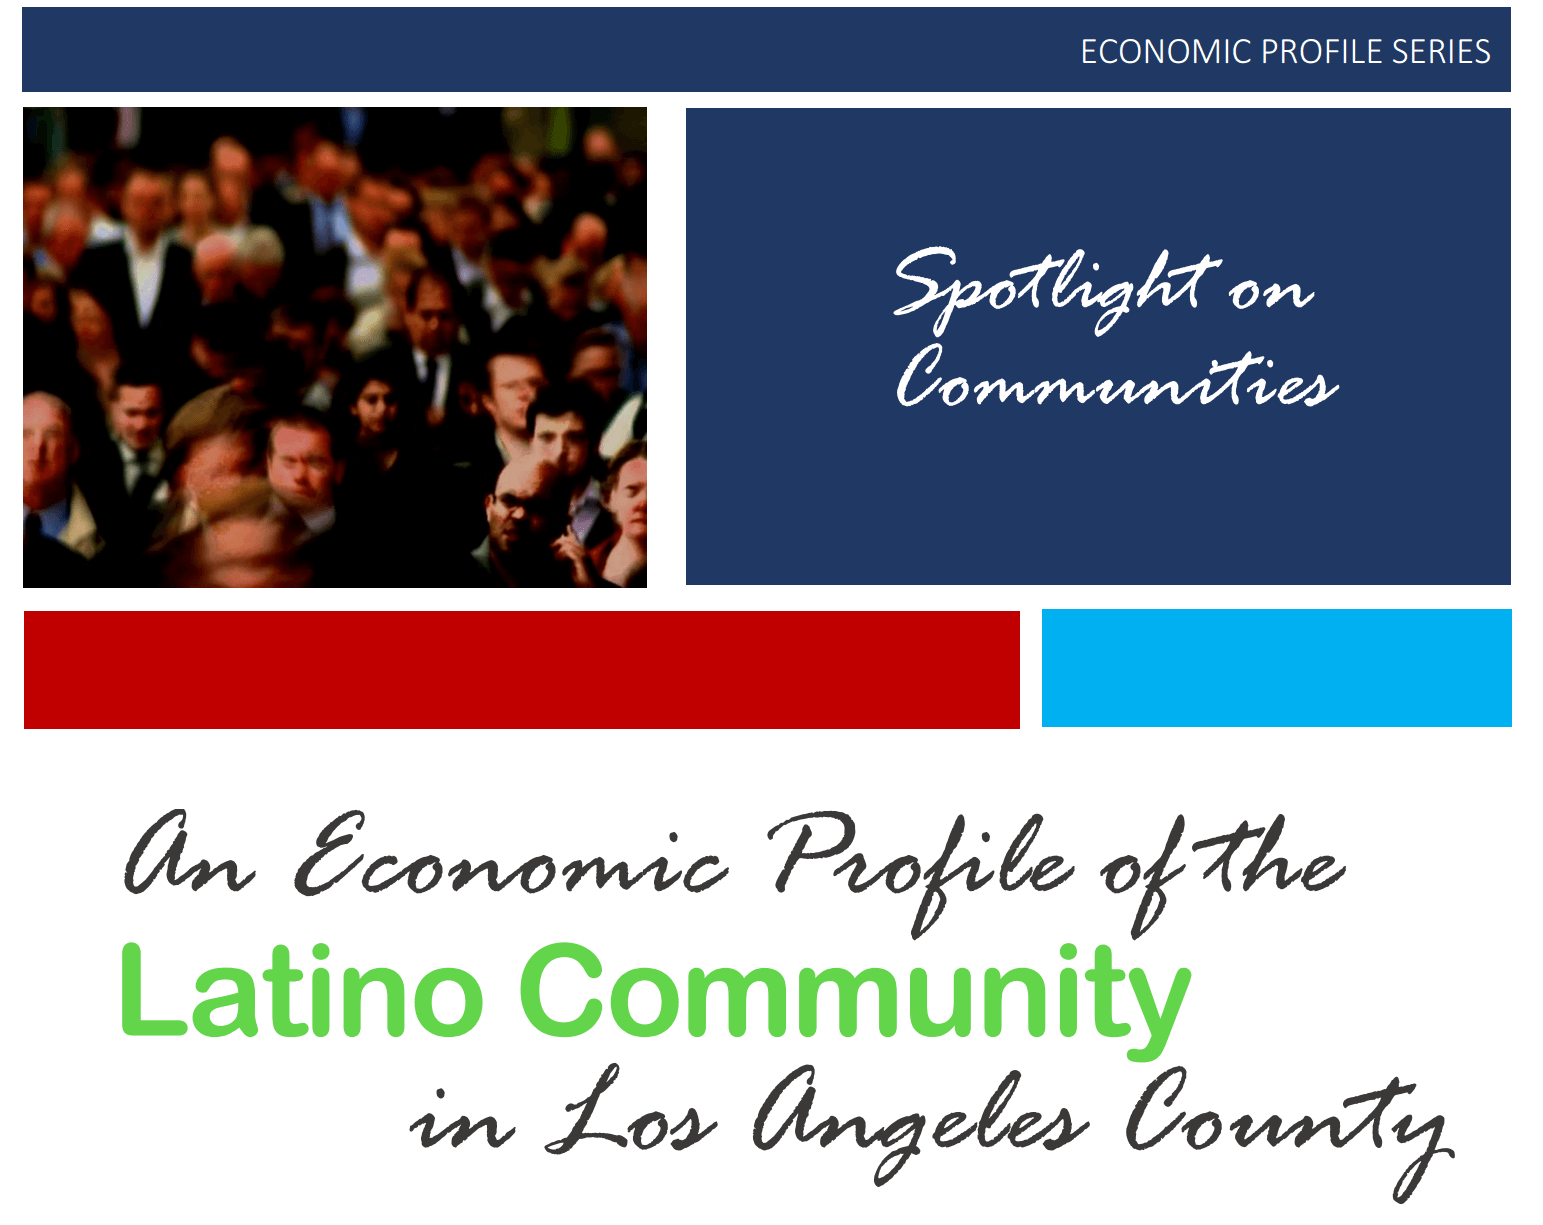 Economic Profile of the Latino Community in LA County